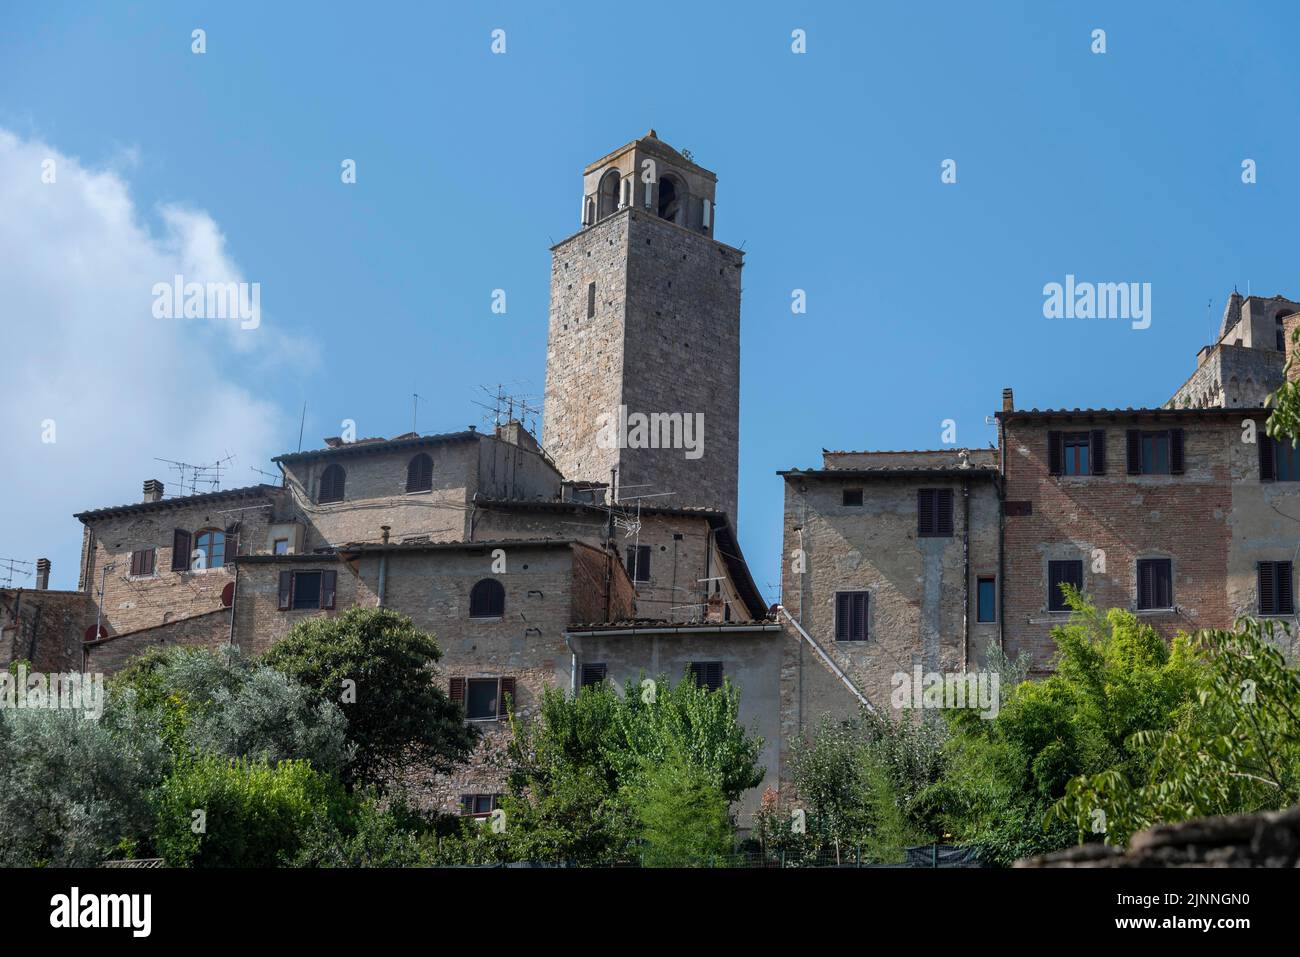 San Gimignano, est également appelé Manhattan médiéval ou ville des Tours, site classé au patrimoine mondial de l'UNESCO, San Gimignano, province de Sienne, Toscane, Italie, Euros Banque D'Images